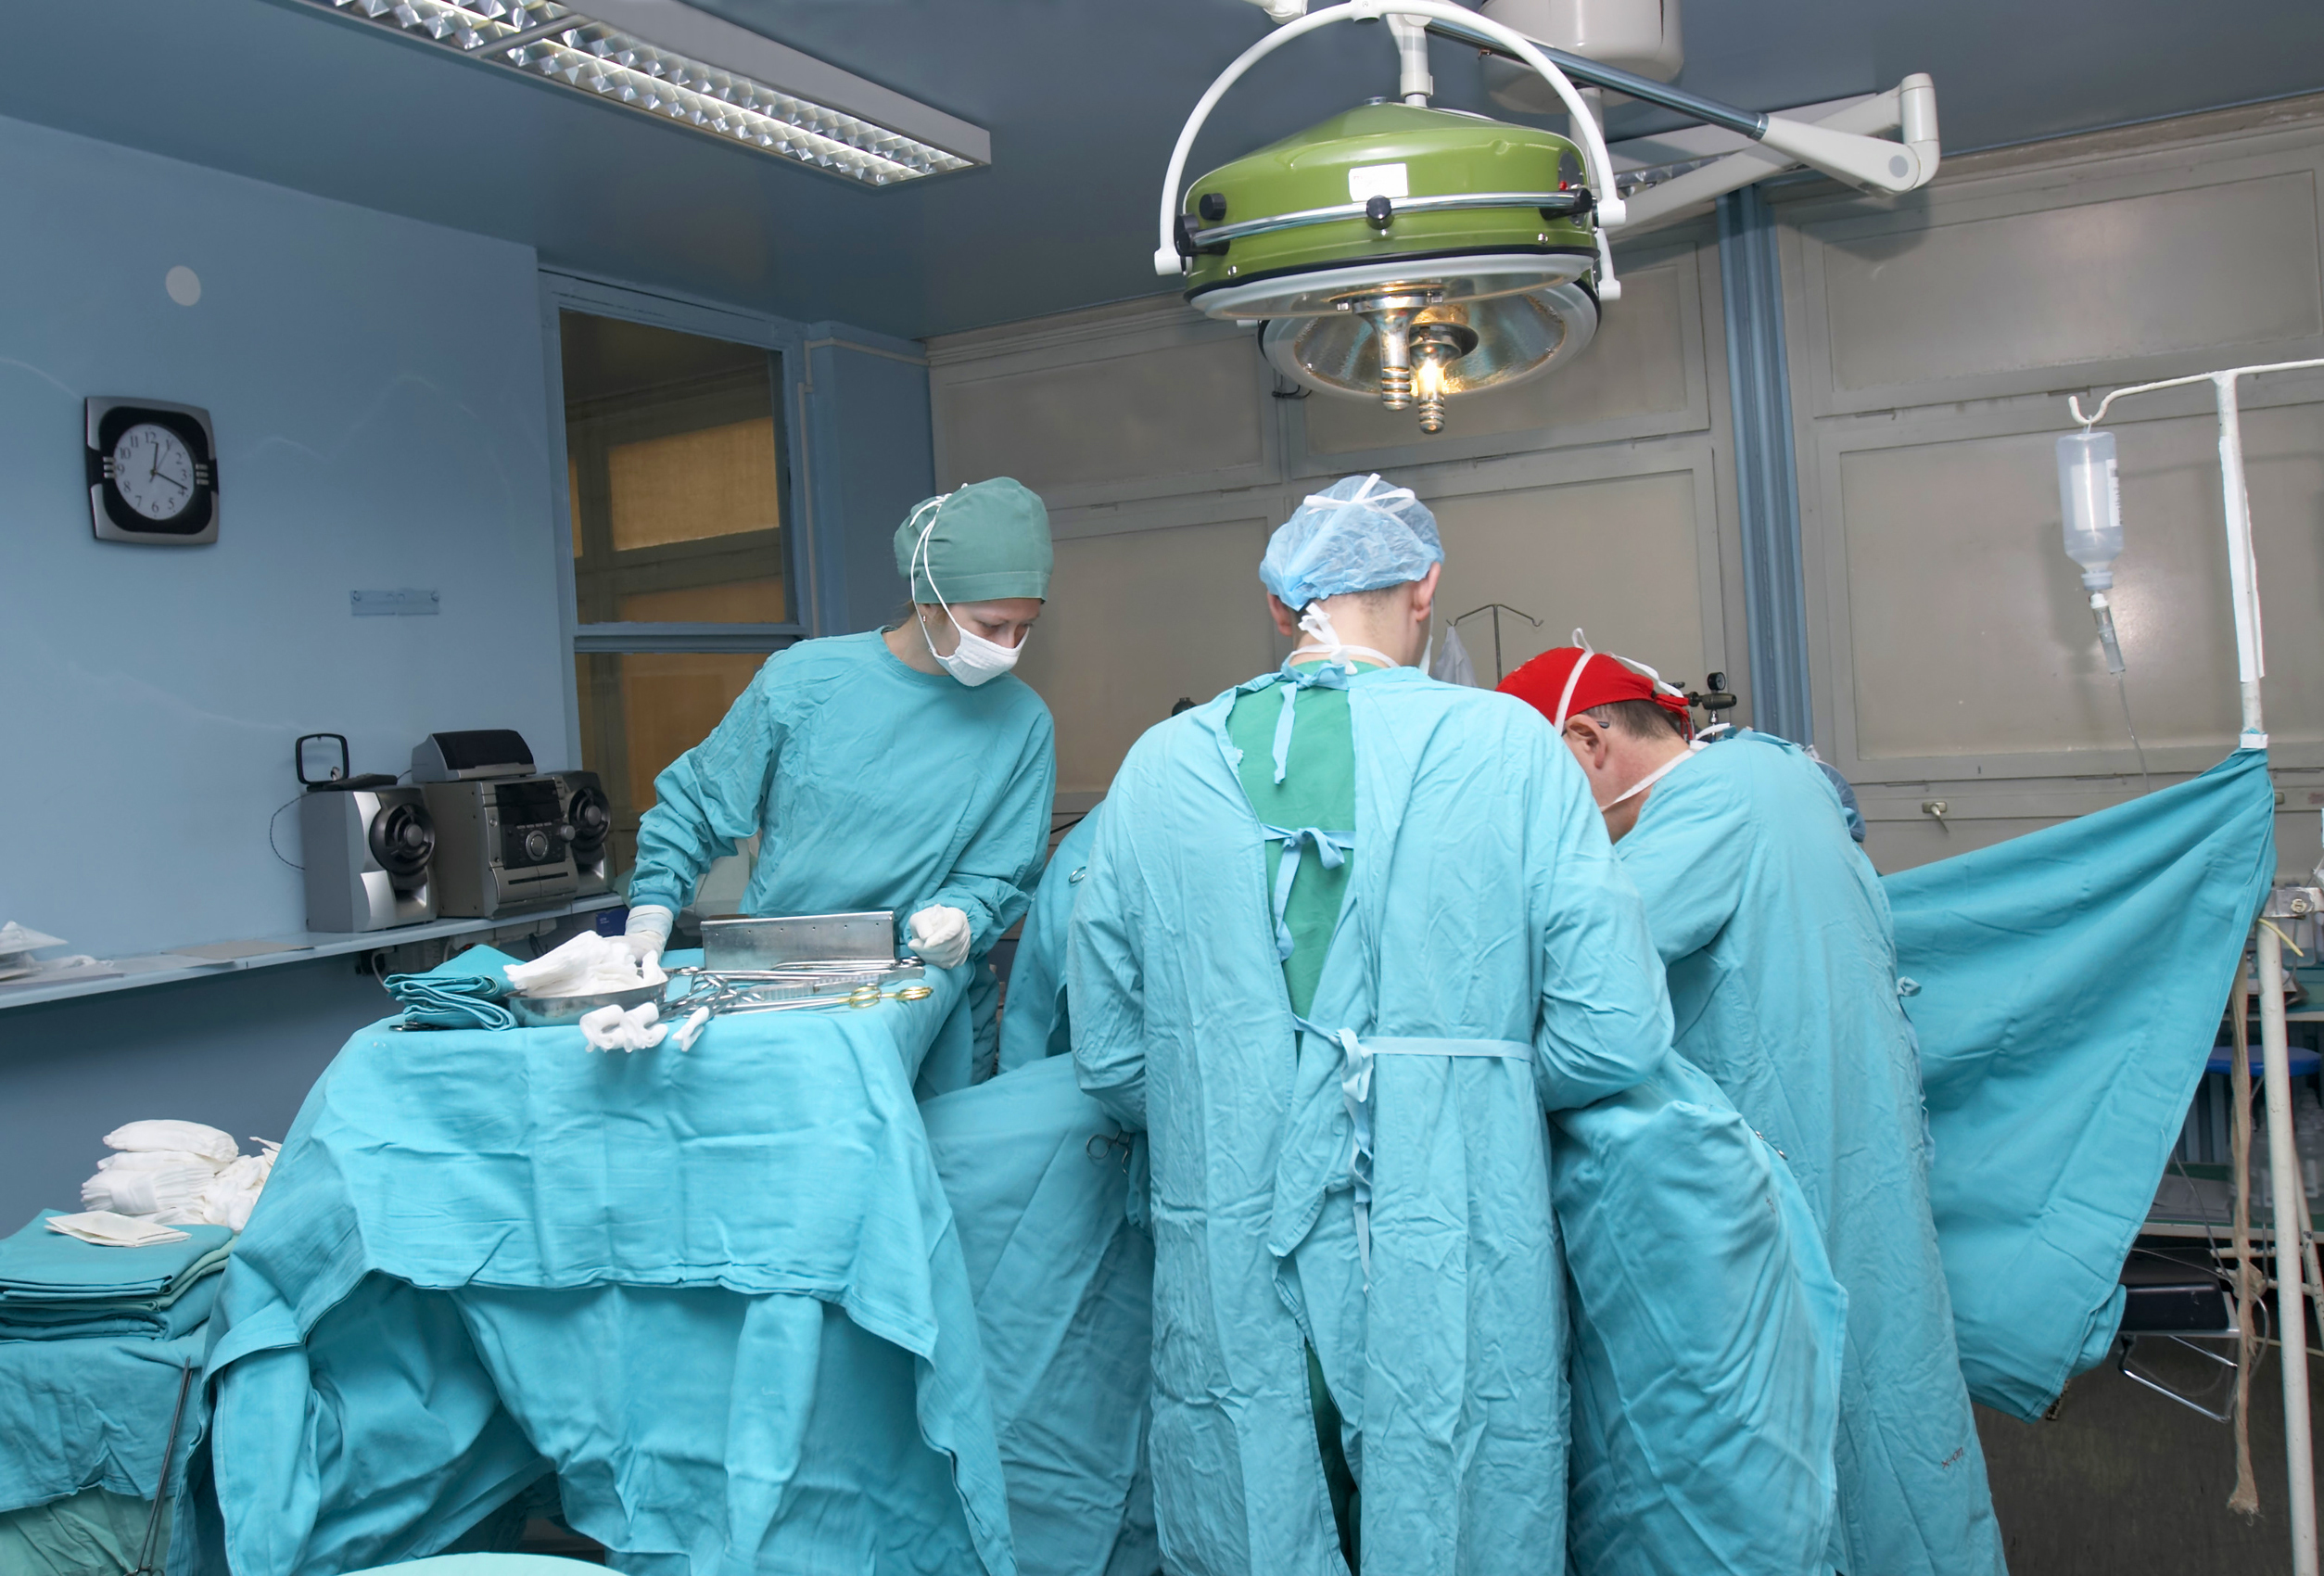 Premieră medicală în România: Primul transplantva fi făcut la spitalul "Sf. Maria" din Capitală